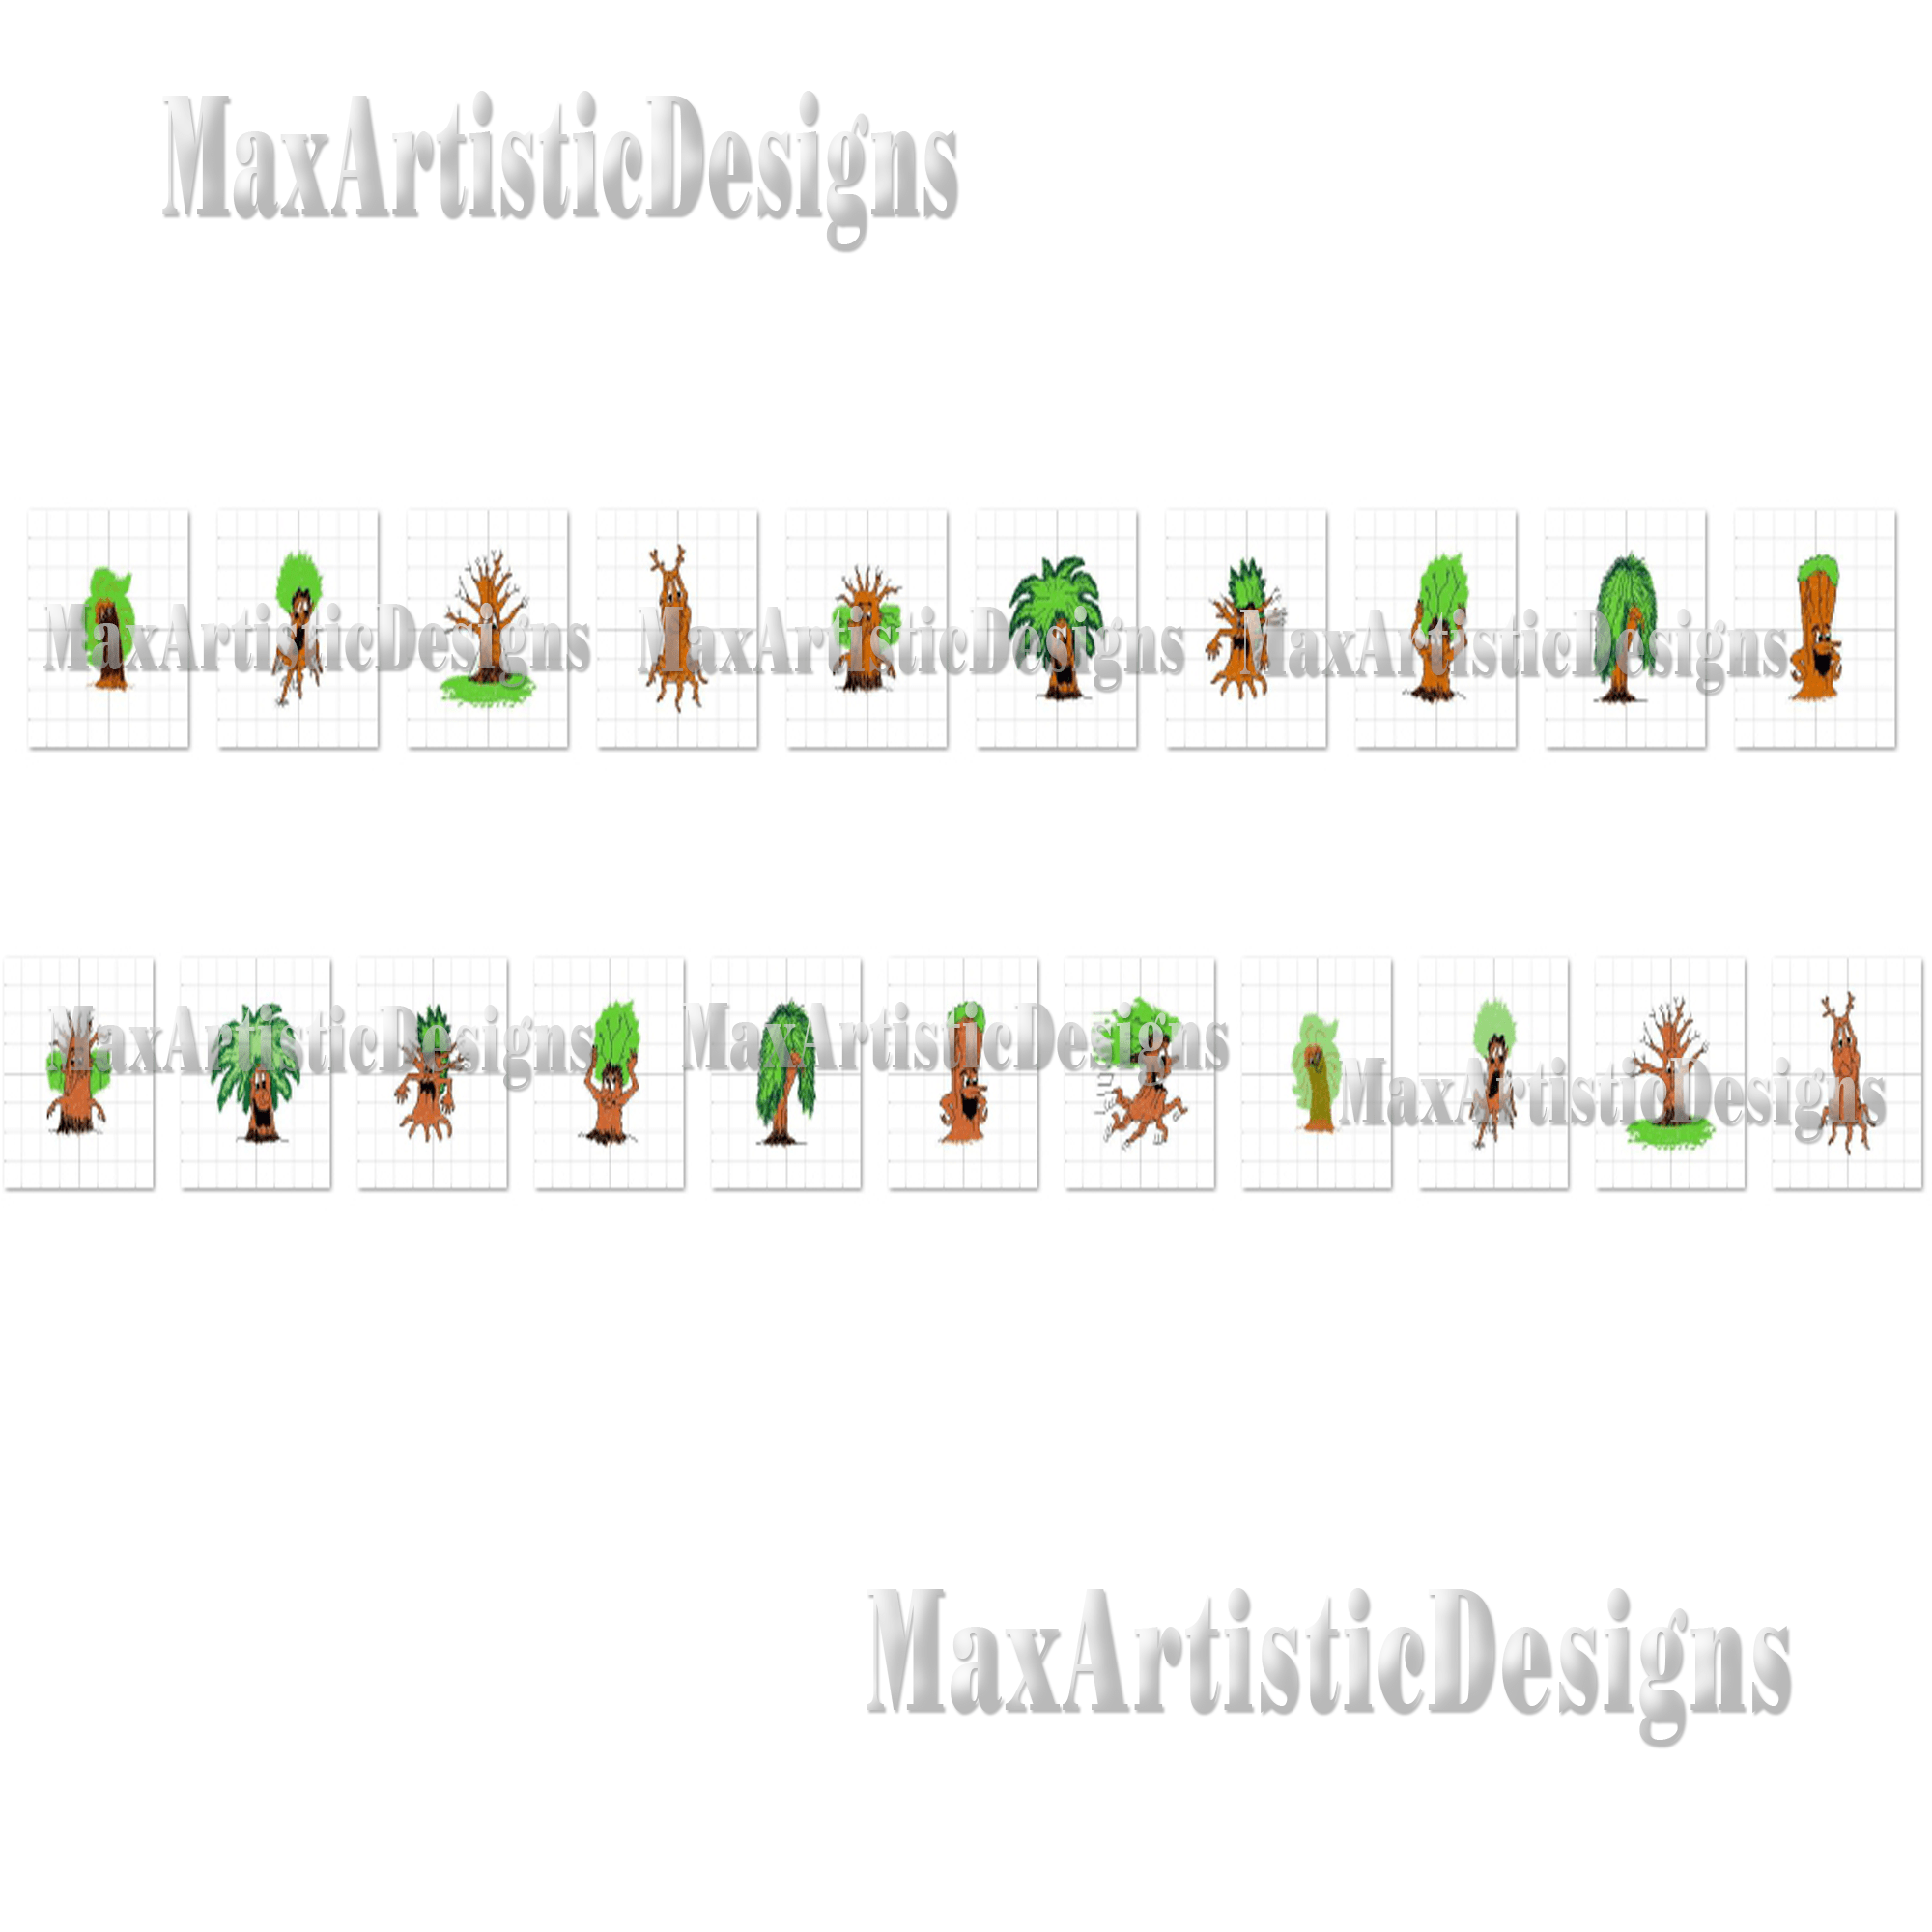 Más de 20 diseños de bordados de árboles divertidos Diseños de bordados a máquina